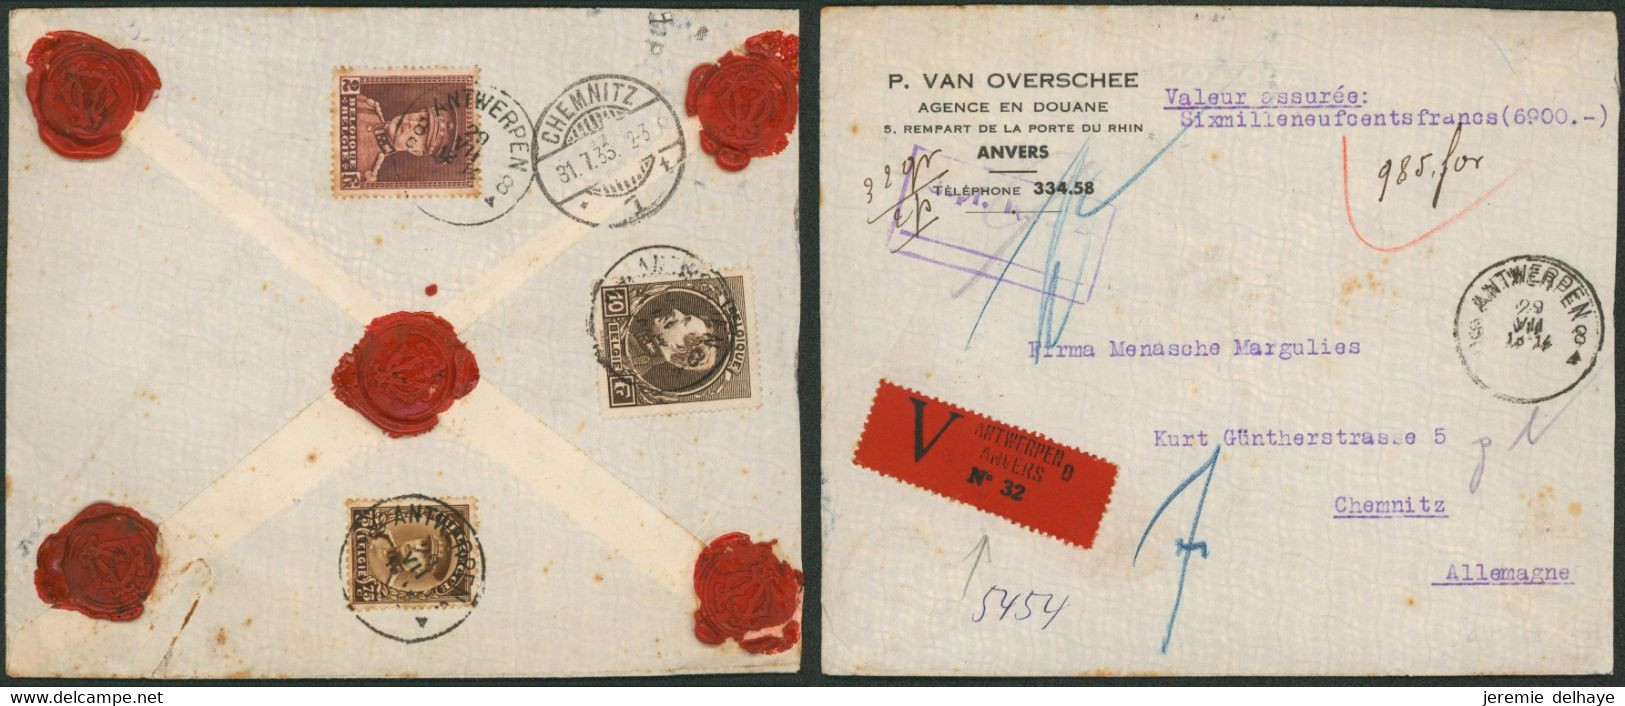 Affranc. Tricolore çàd N°289, 321 Et 341 Sur L. Assurée (6900 Frs, 32 Gr, 2 Ports) De Antwerpen (1933) > Chemnitz (AL) - 1929-1941 Gran Montenez